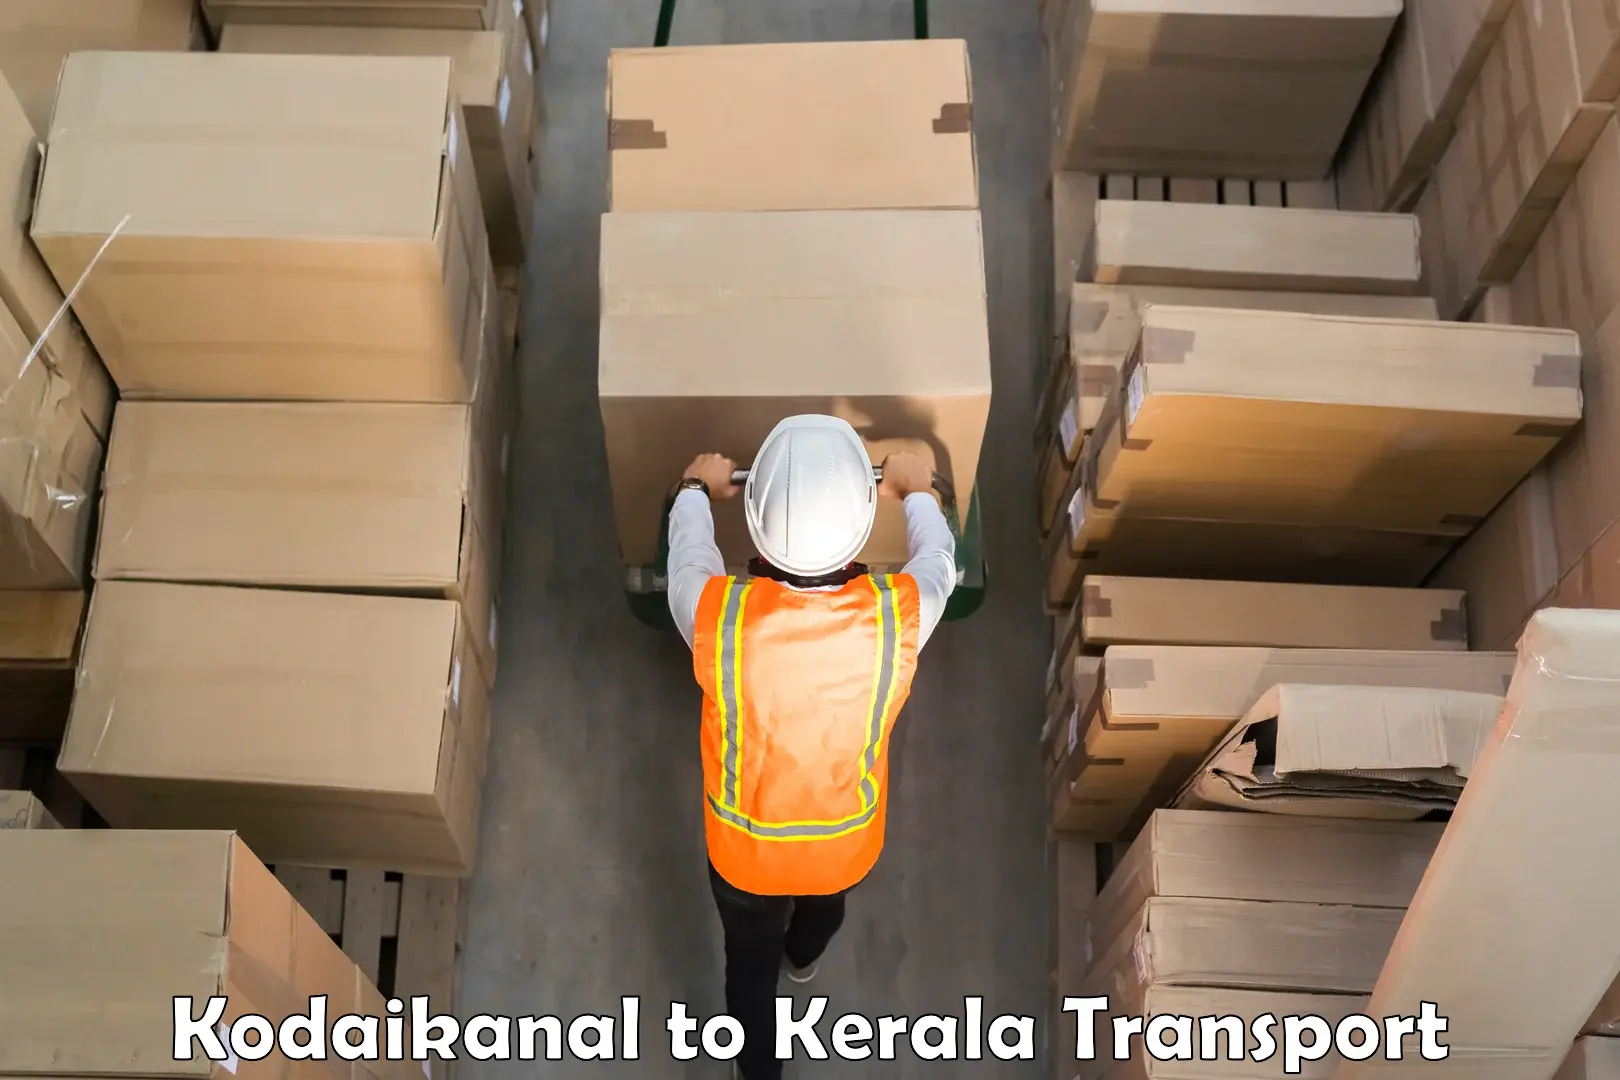 Nearest transport service Kodaikanal to Kakkayam